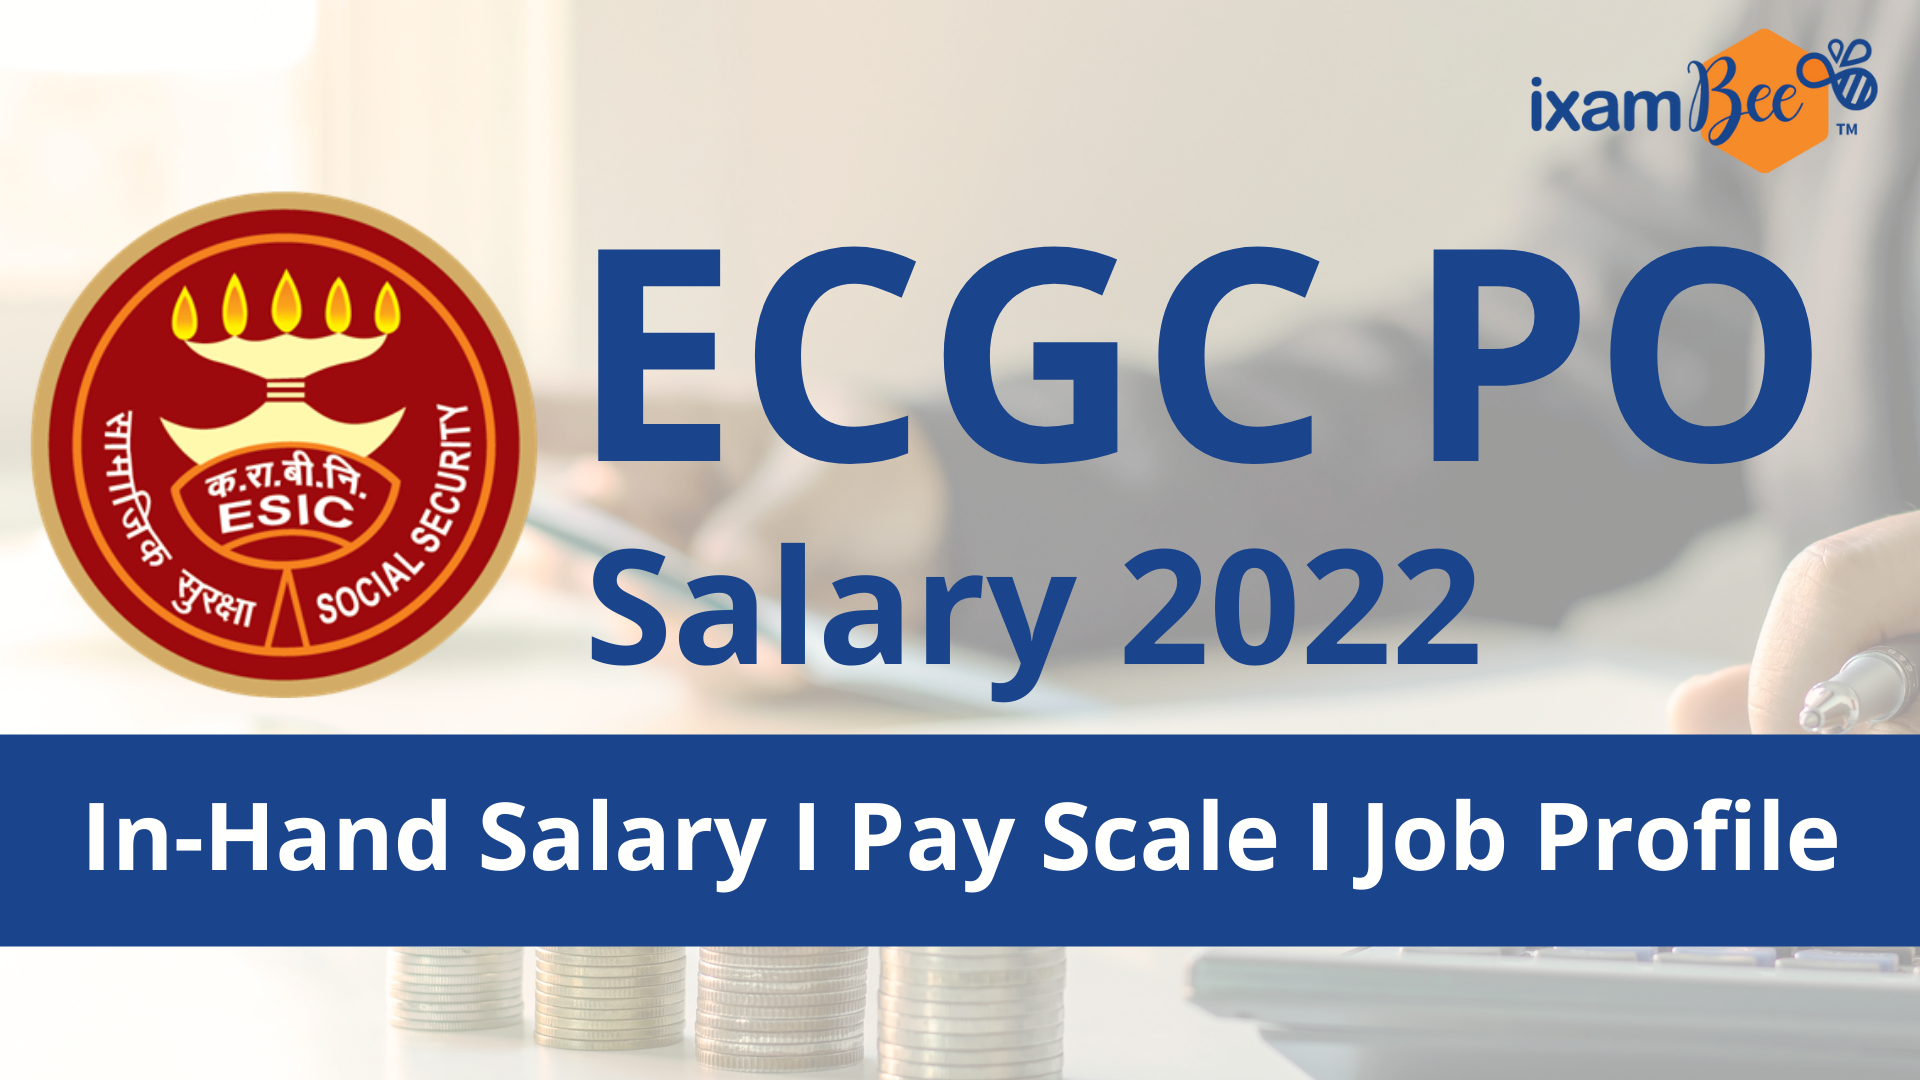 ECGC PO Salary 2022